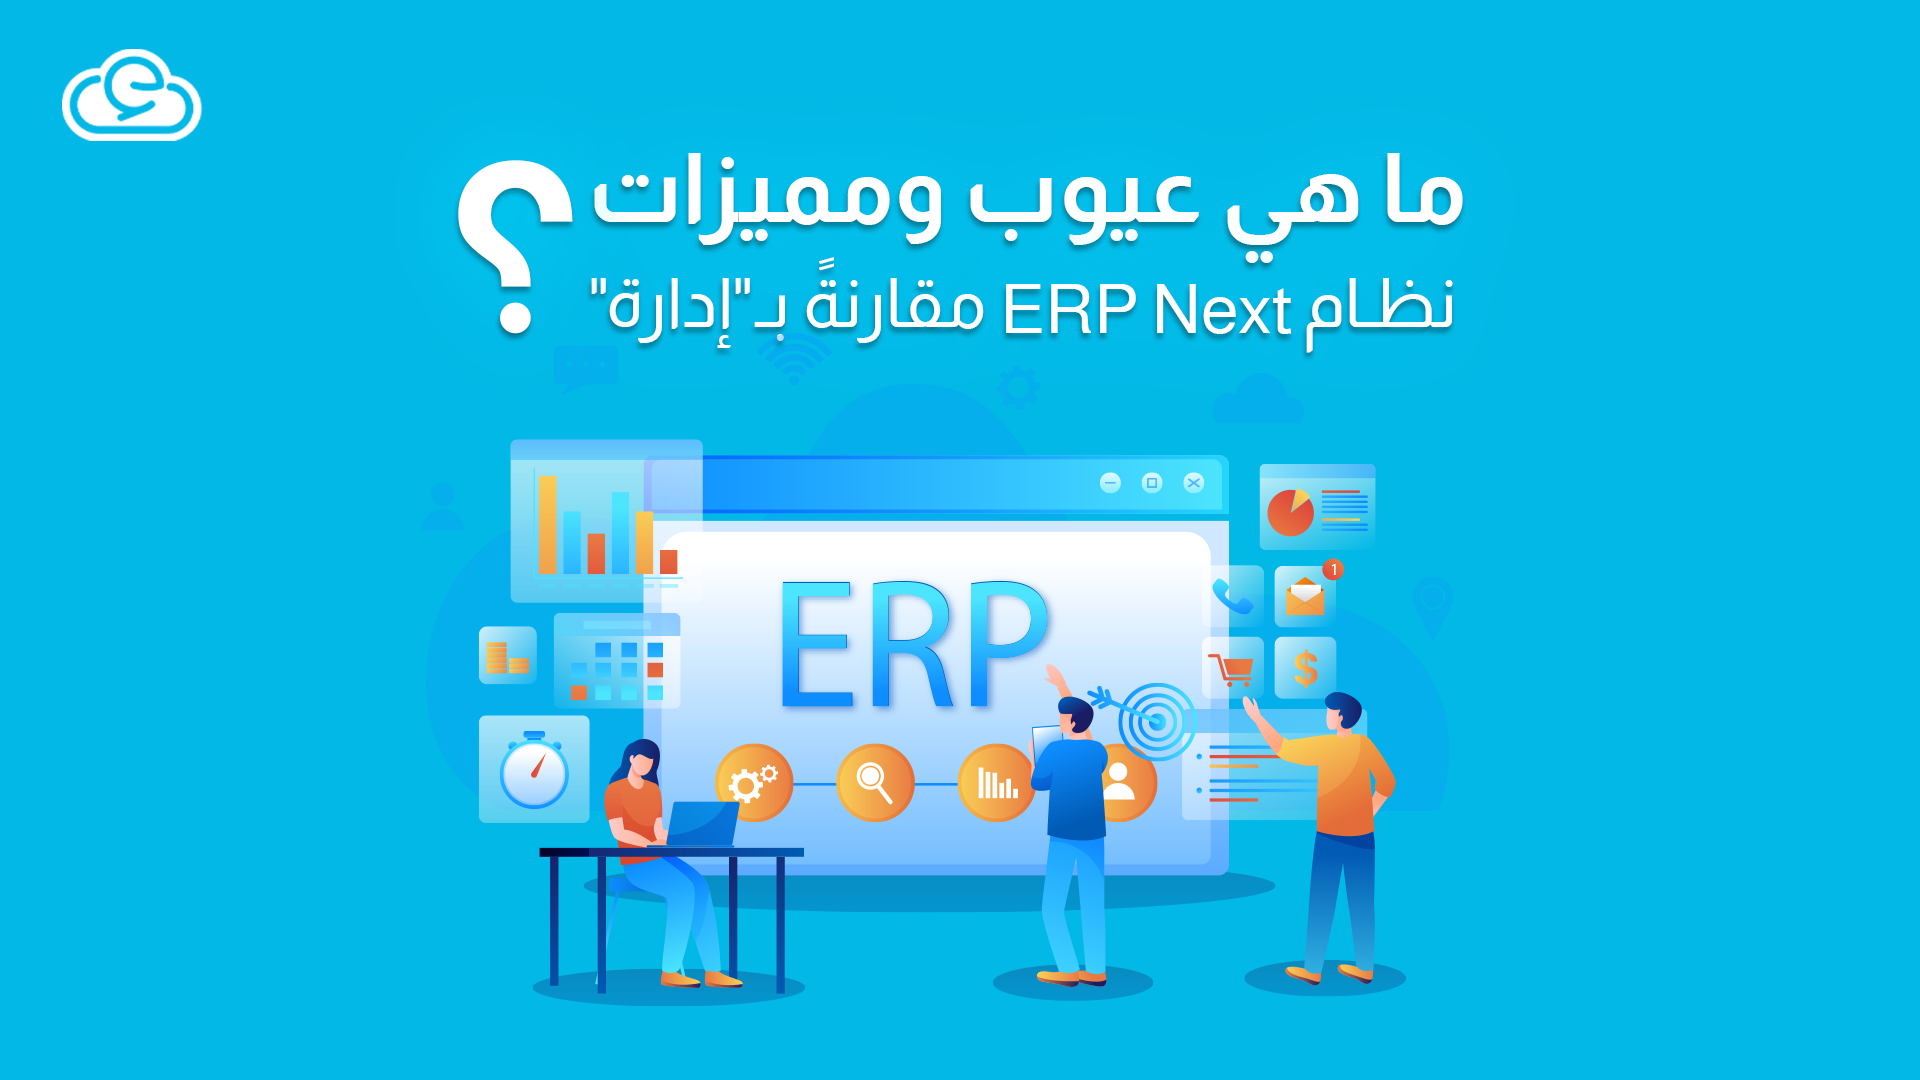 ما هي عيوب ومميزات نظام ERP Next مقارنةً بـإدارة